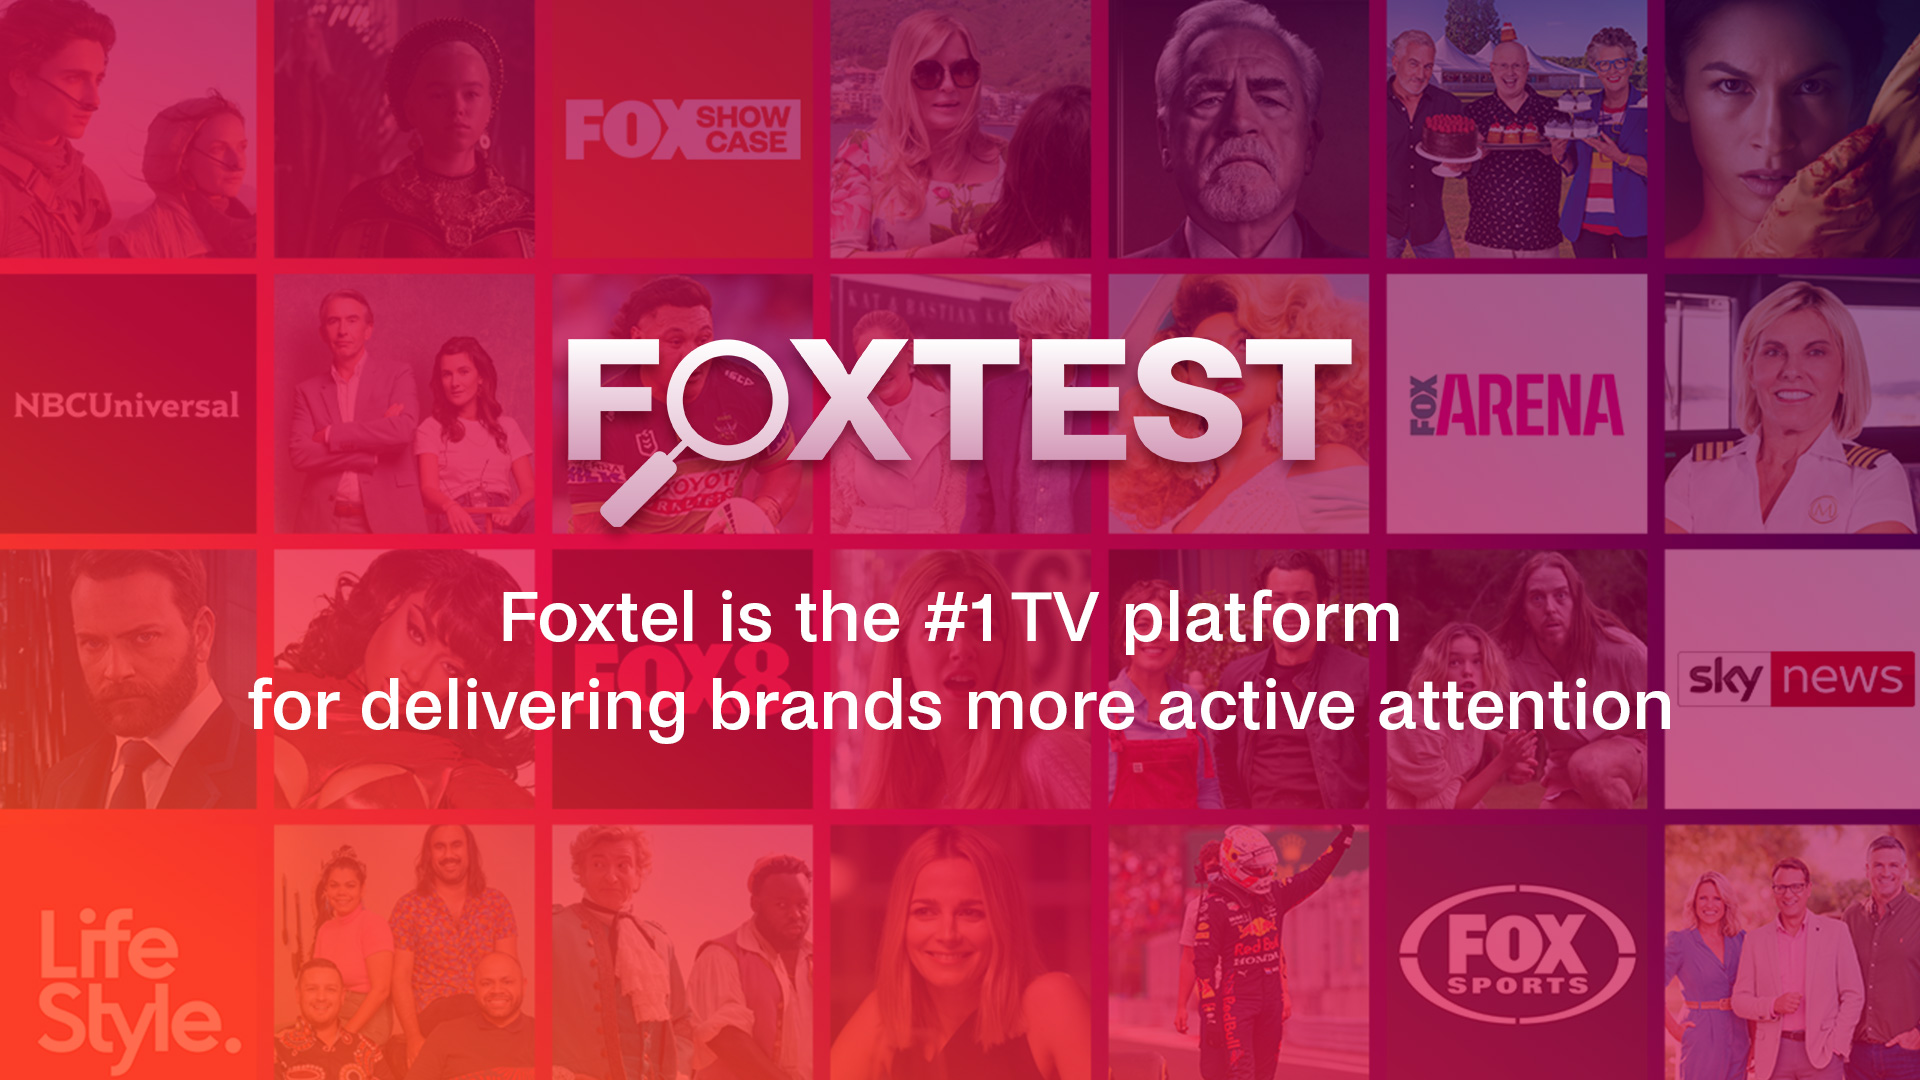 Foxtel is the #1 TV platform for delivering brands more active attention